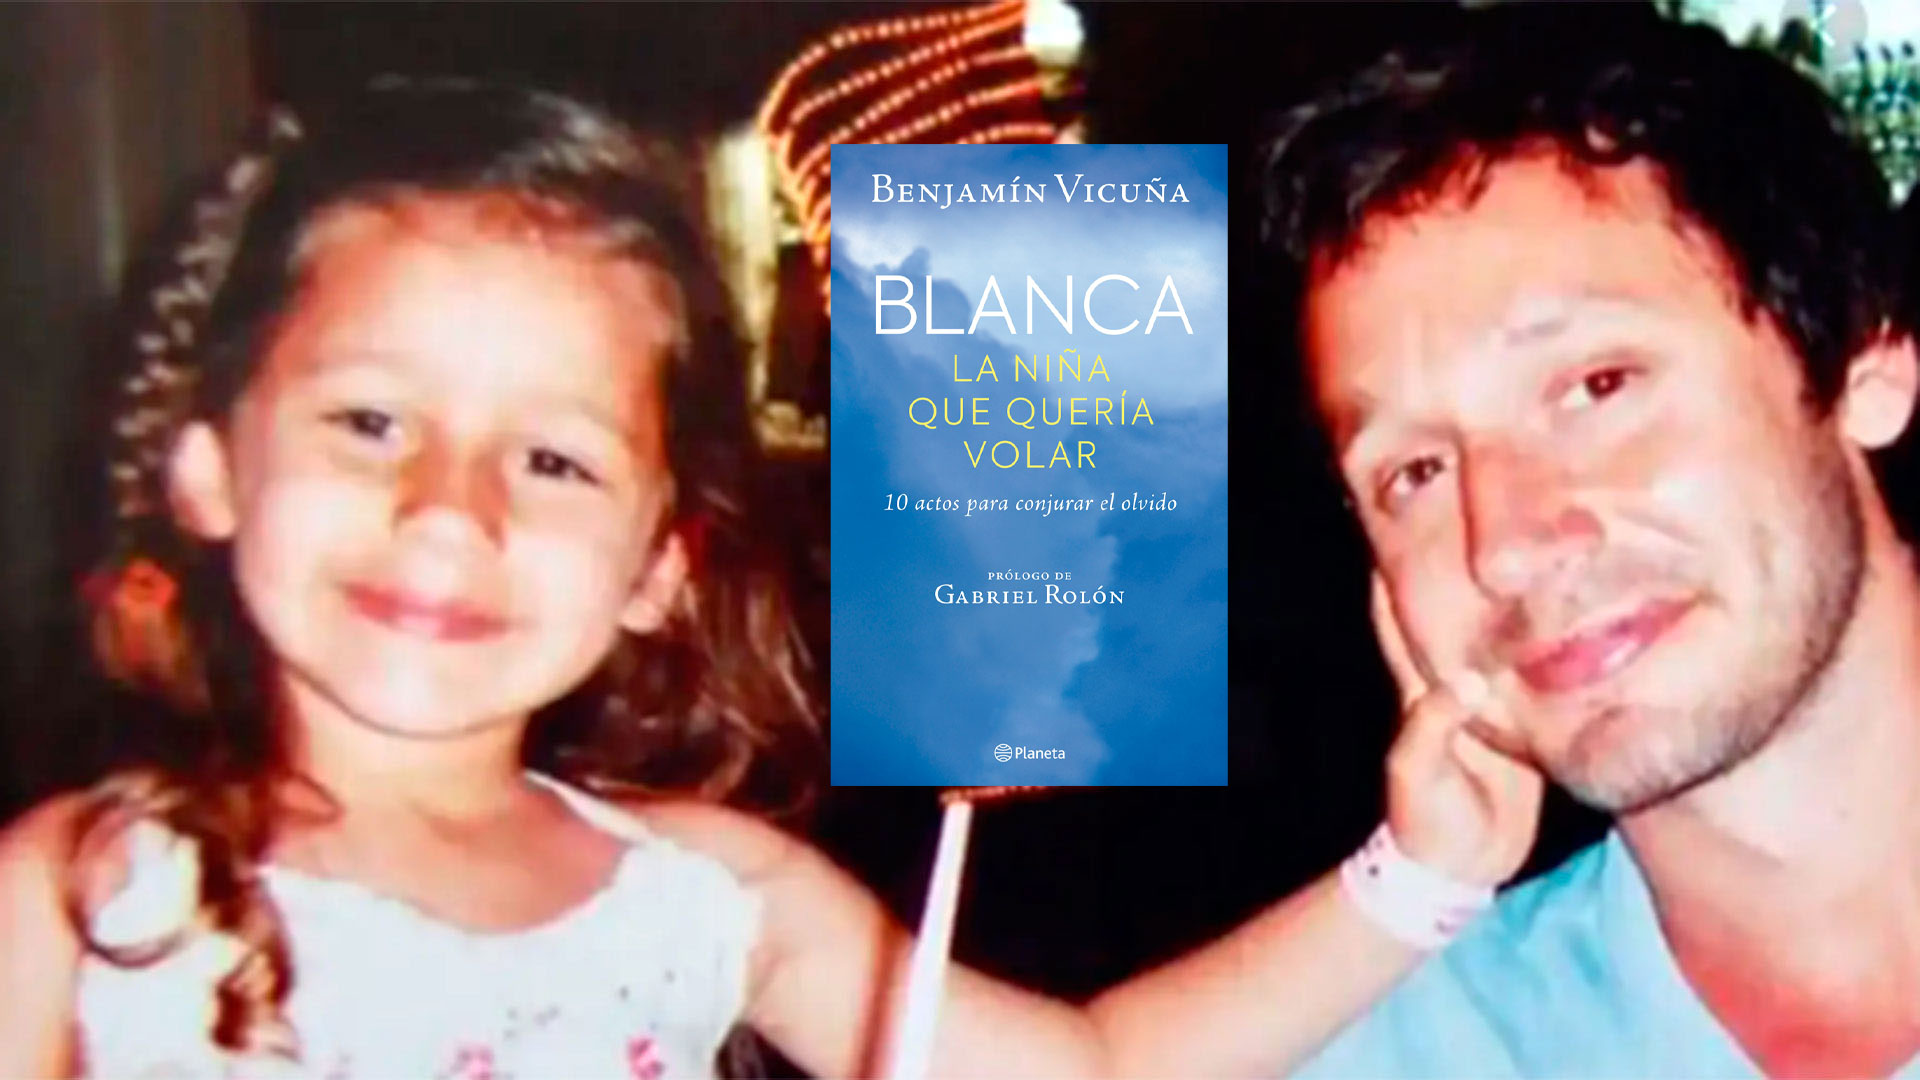 Benjamín Vicuña en su libro "Blanca, la niña que quería volar": “La pérdida de un hijo está considerada como una pérdida tan inconcebible e insuperable que no existe un término para nombrarla". 